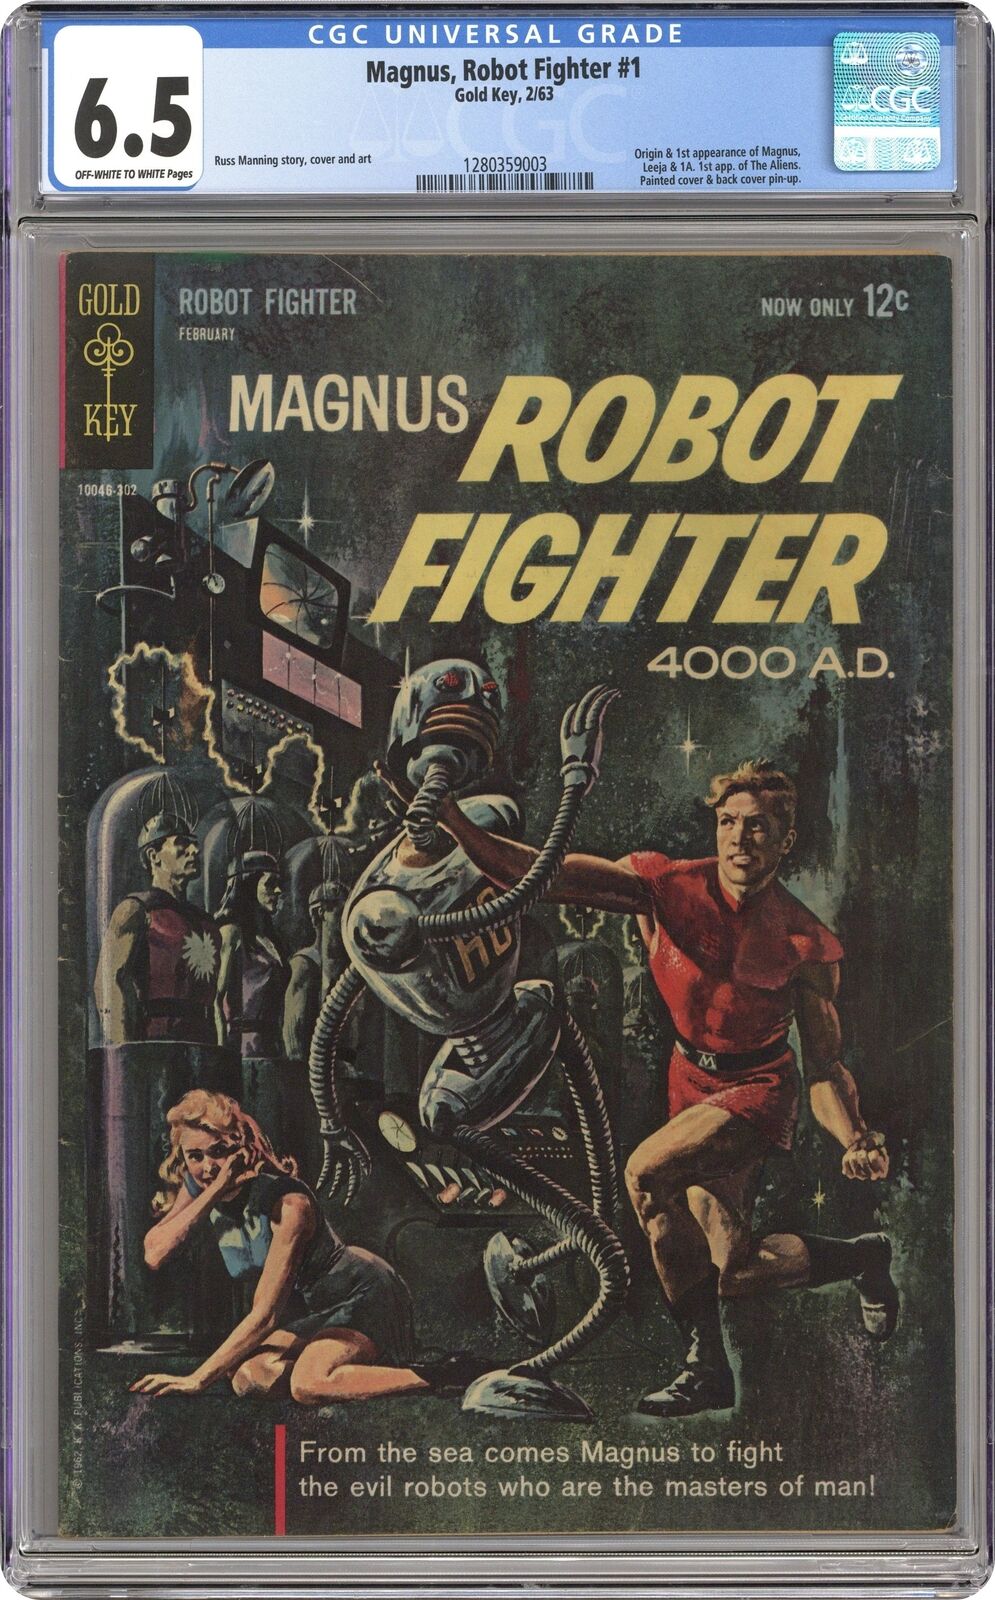 Magnus Robot Fighter #1 CGC 6.5 1963 1280359003